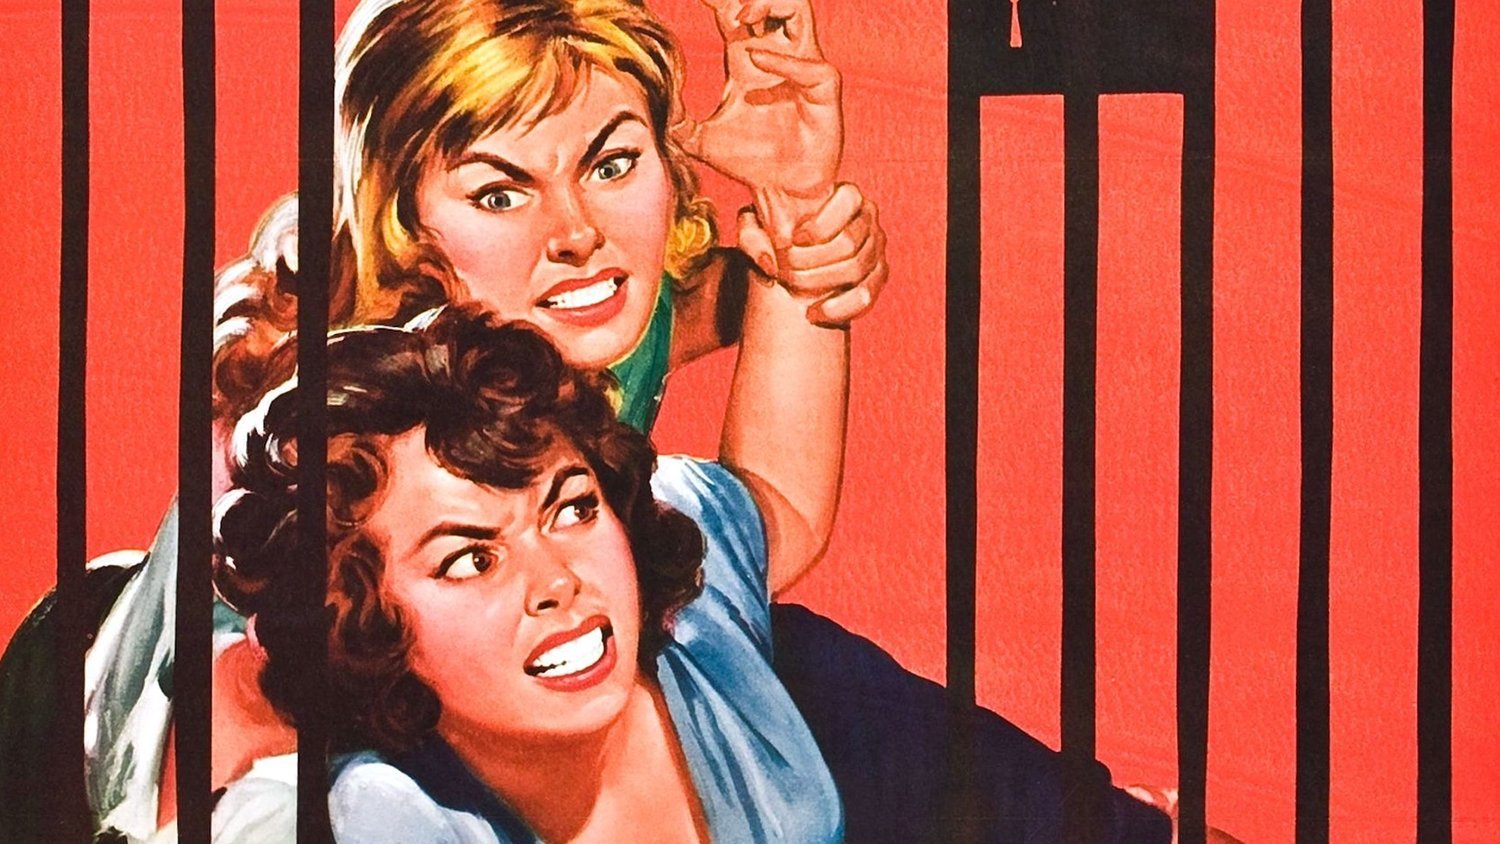 Bande-annonce rétro du film d’exploitation REFORM SCHOOL GIRLS de 1986 – « C’est le film dont ils disaient qu’il ne pouvait pas être réalisé »